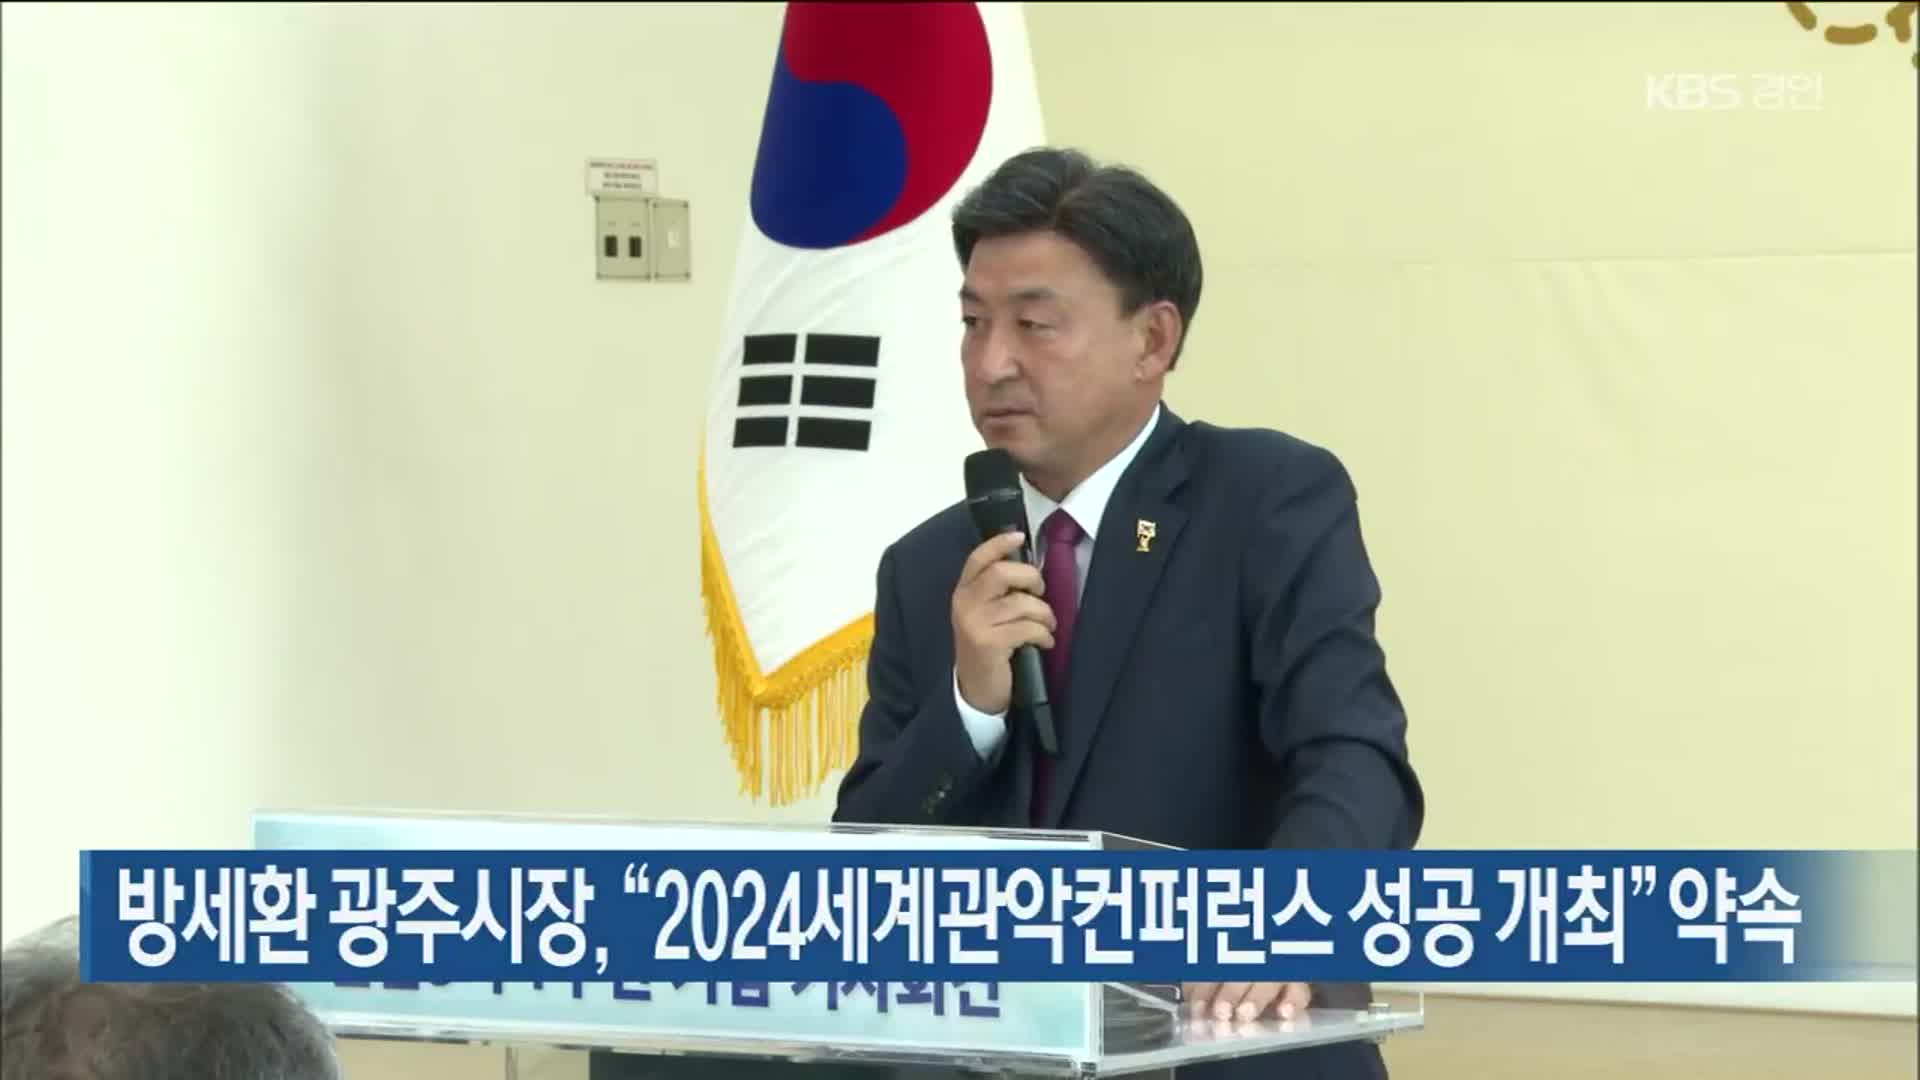 방세환 광주시장, “2024세계관악컨퍼런스 성공 개최” 약속